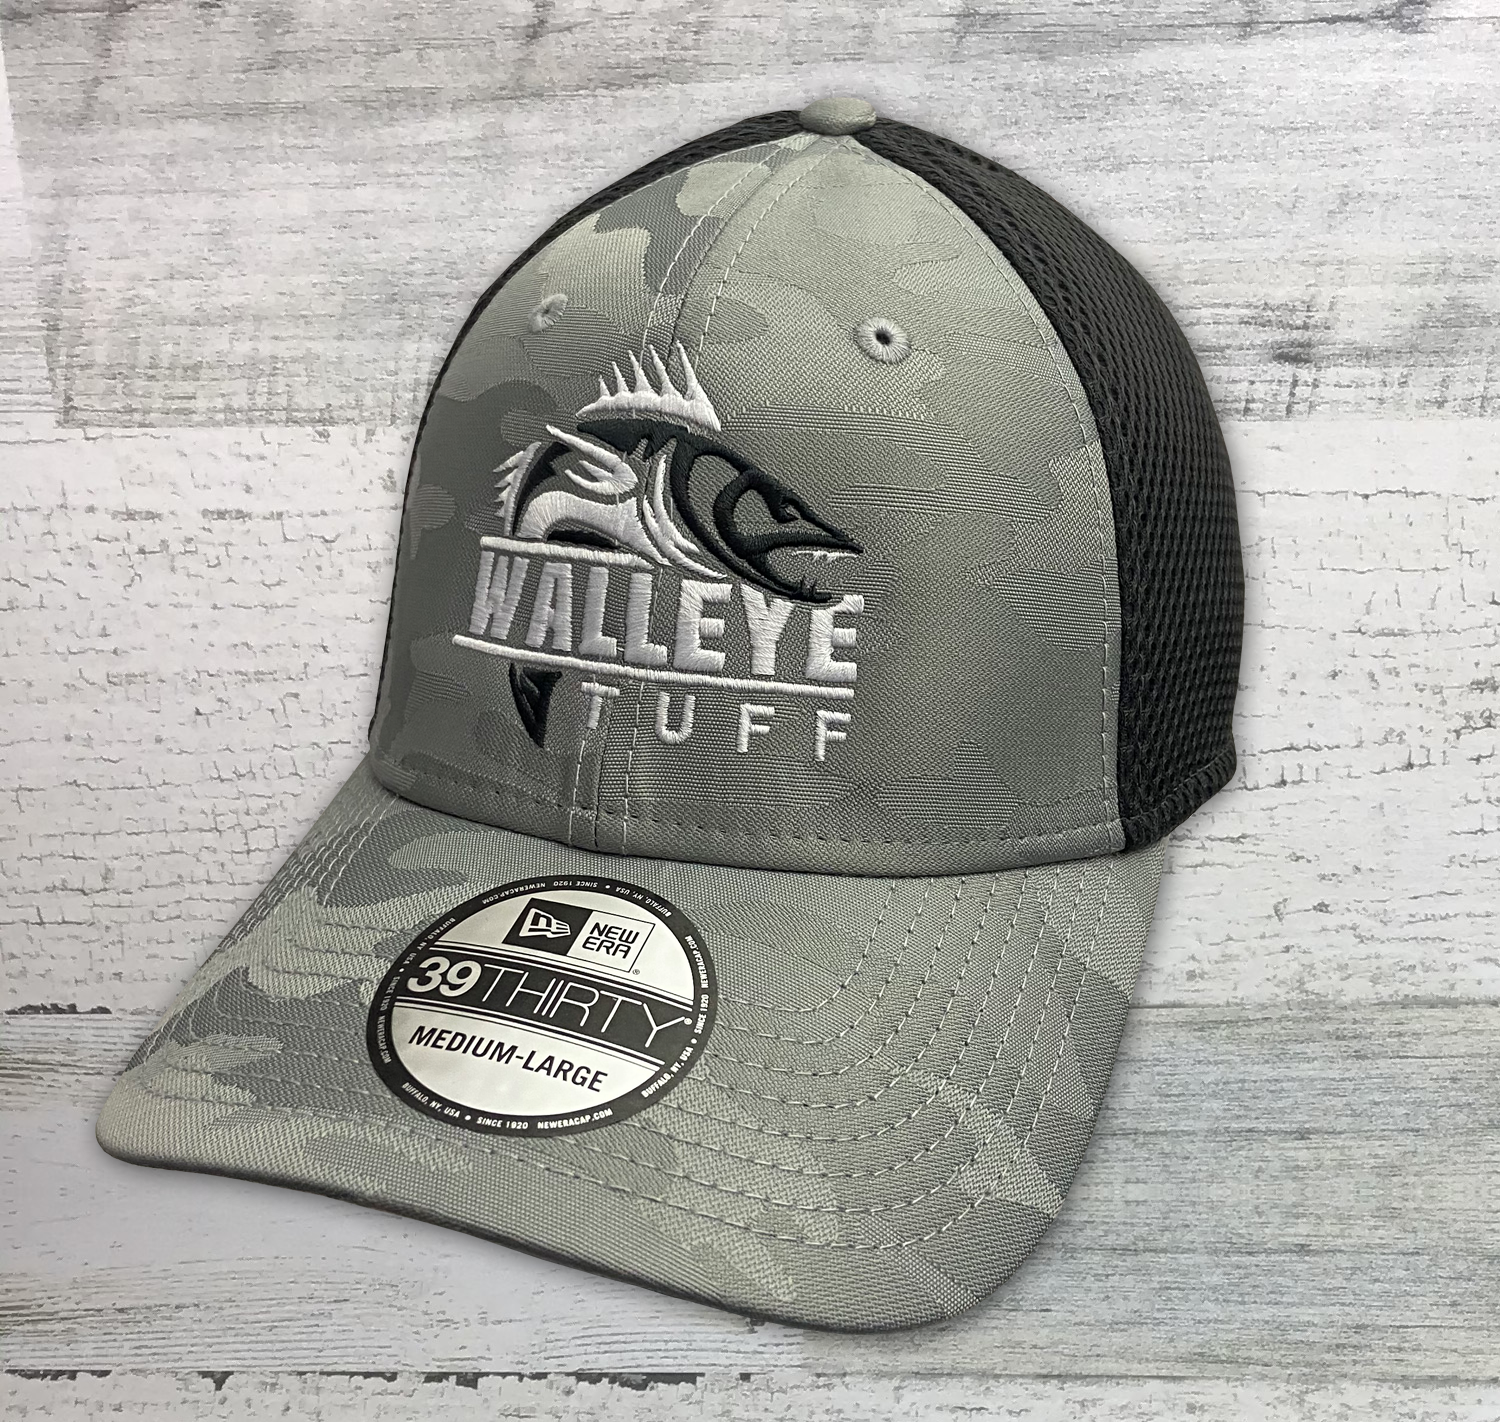 Walleye Tufff - Fishing Hat - New Era ® Tonal Gray Camo Stretch Tech M -  Hook & Drag